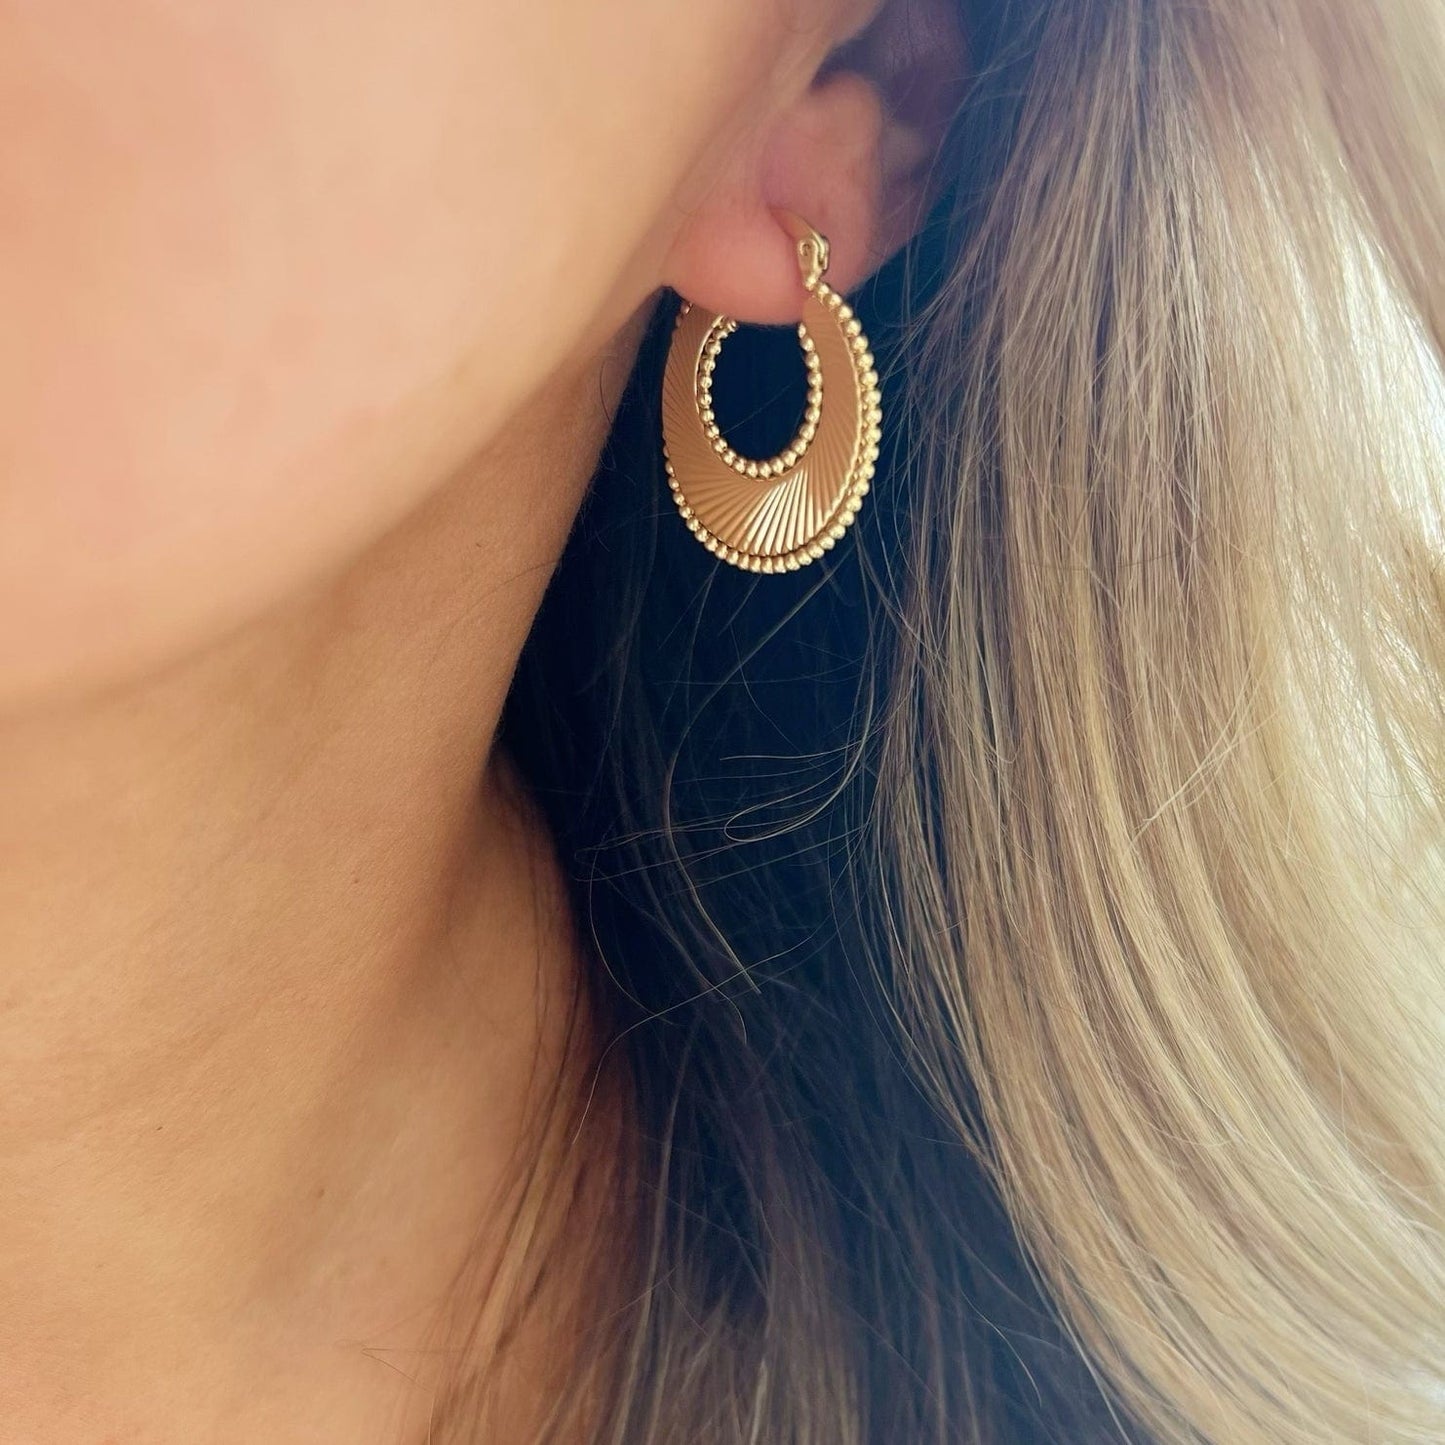 EAR-GF Freedom Sunburst Spiral Hoops Earrings Gold Filled